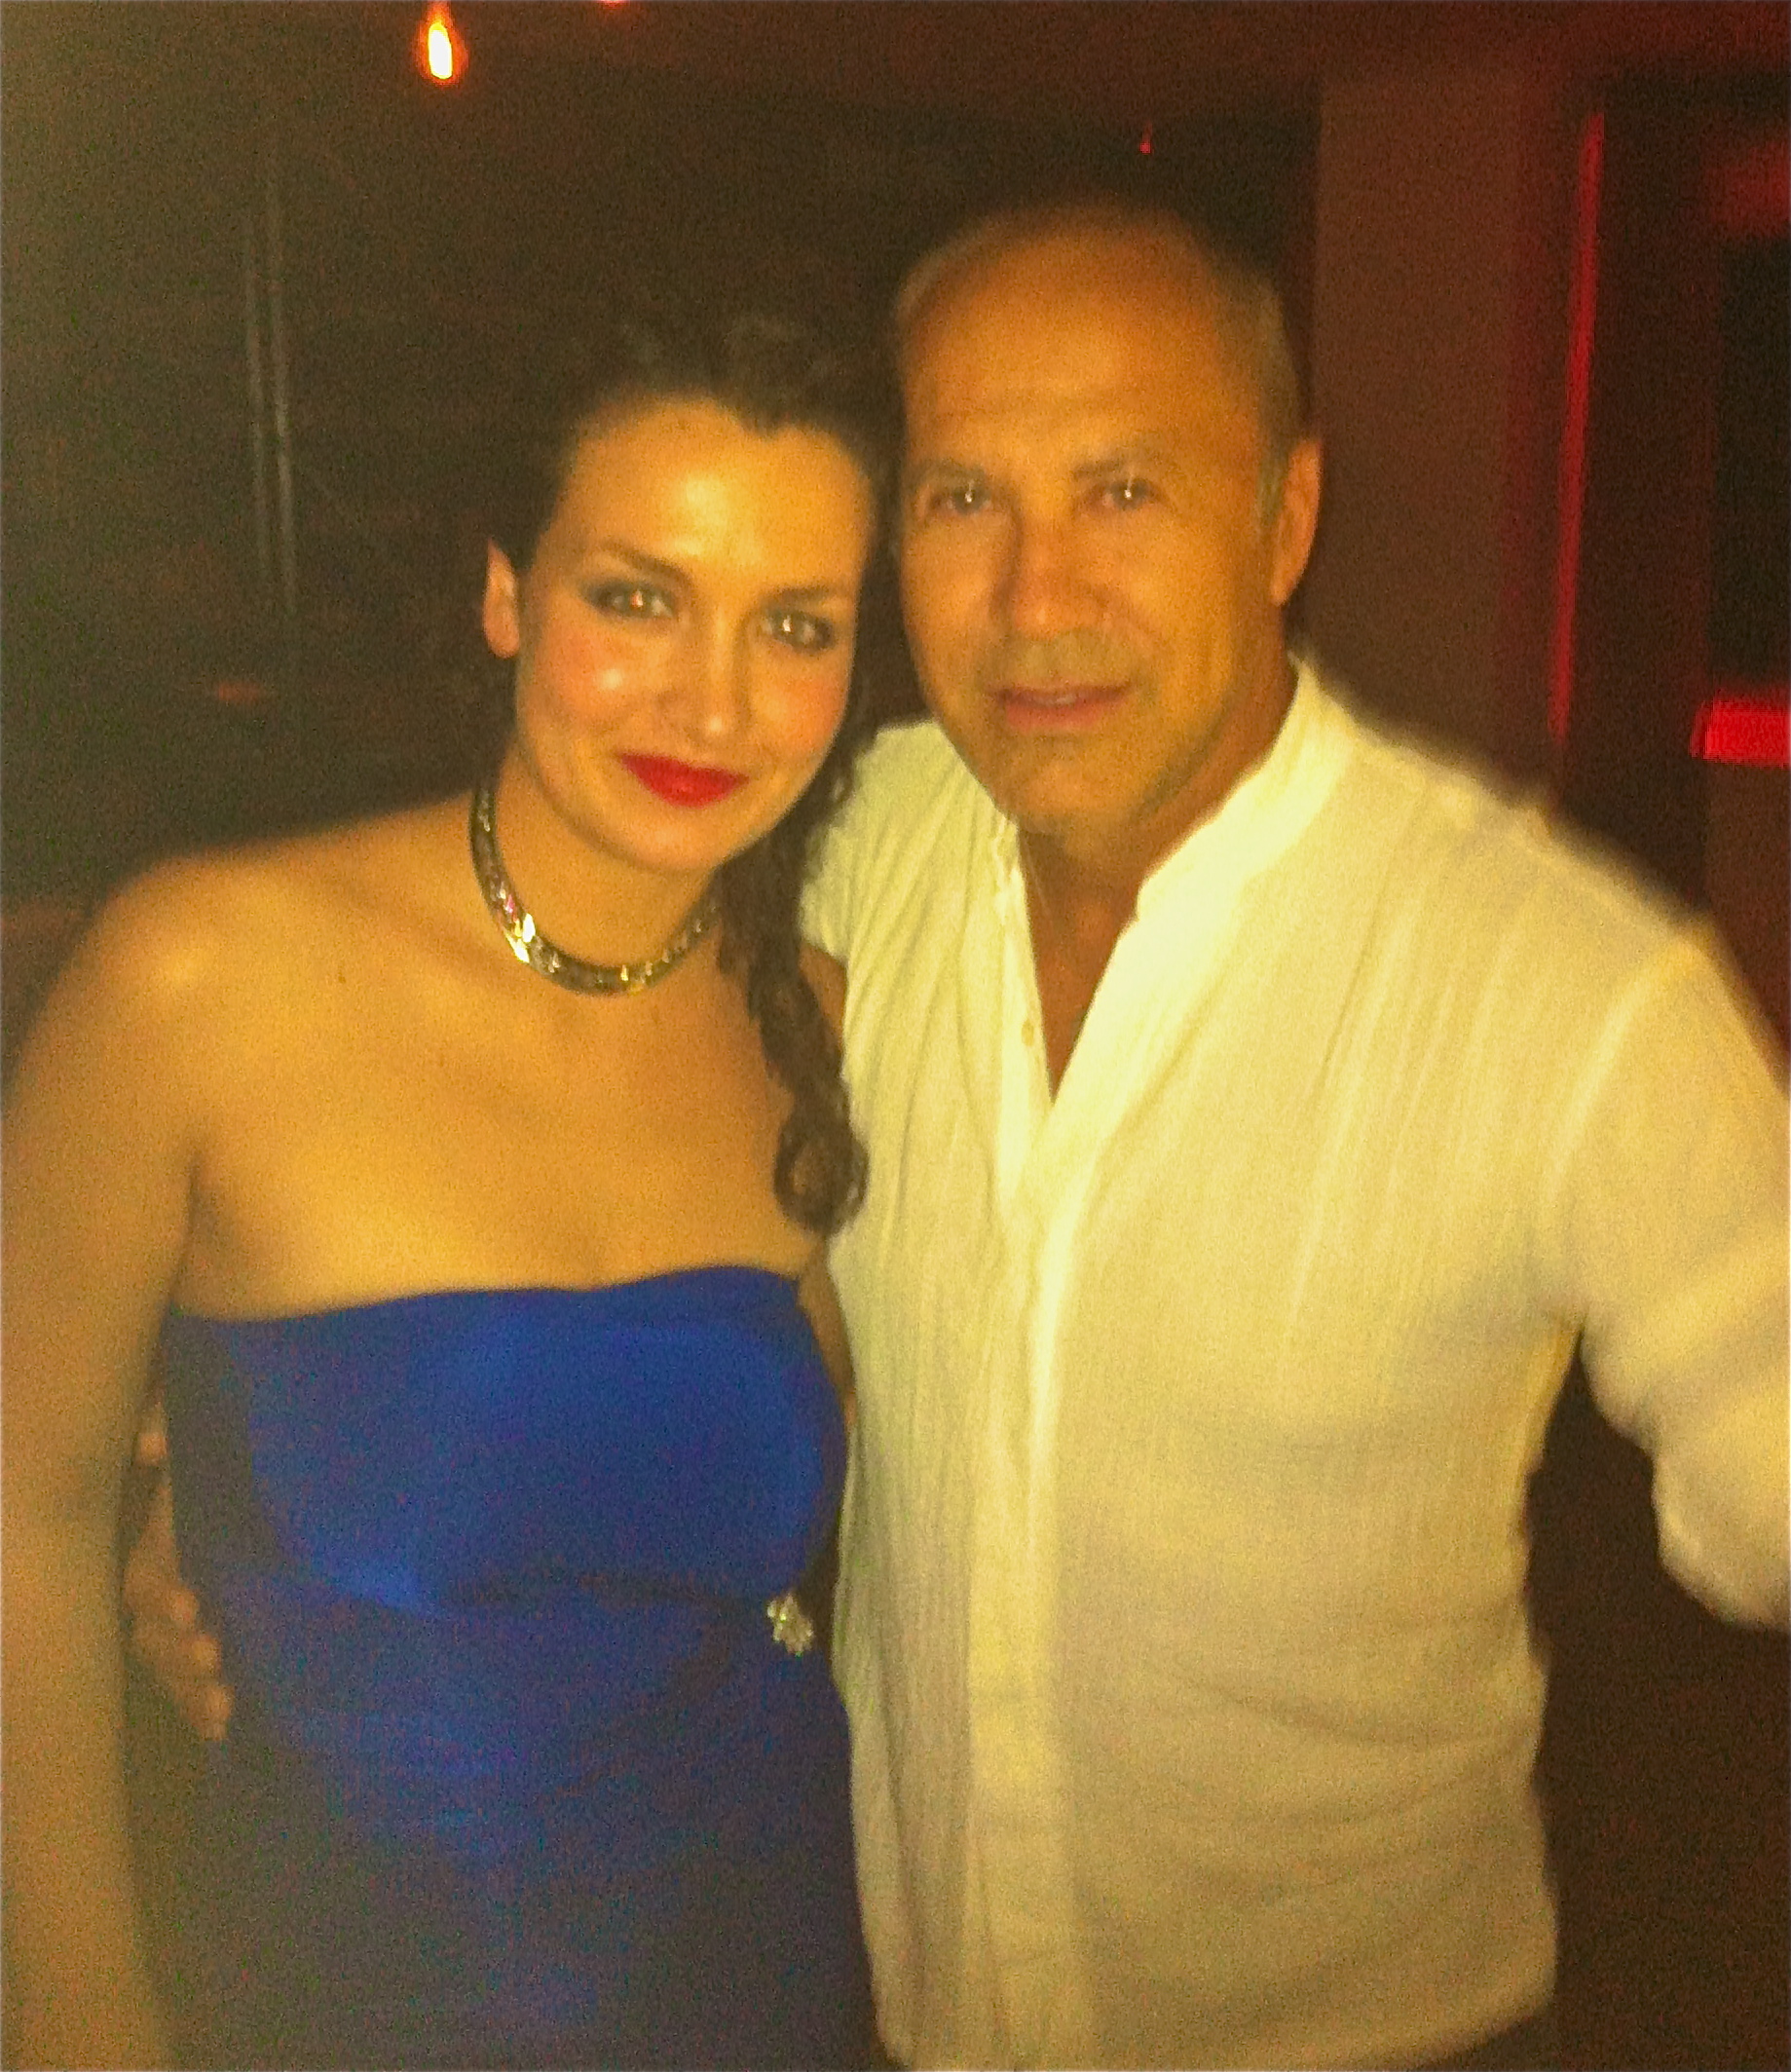 Deborah Dominguez and Héctor Noas at Event for La Gran Noche del Teatro with La Última Noche Opening and ParisTokyo Restaurant